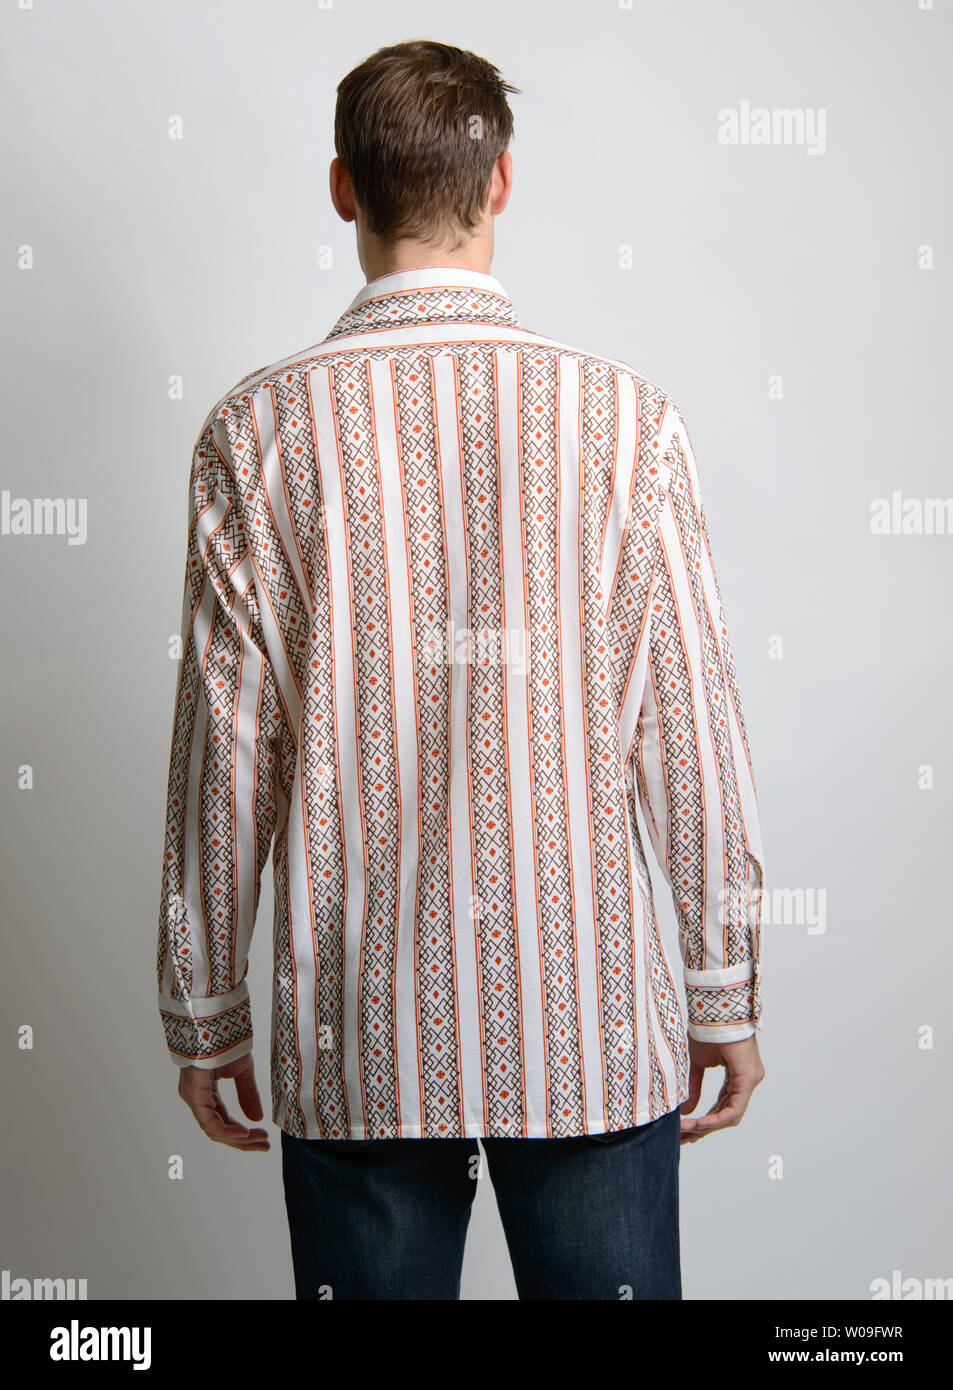 Un modello maschio caucasico di capelli marroni pone in una camicia a strisce vintage, la sua fotocamera rivolta verso la schiena, un editoriale di moda vintage maschile. Foto Stock